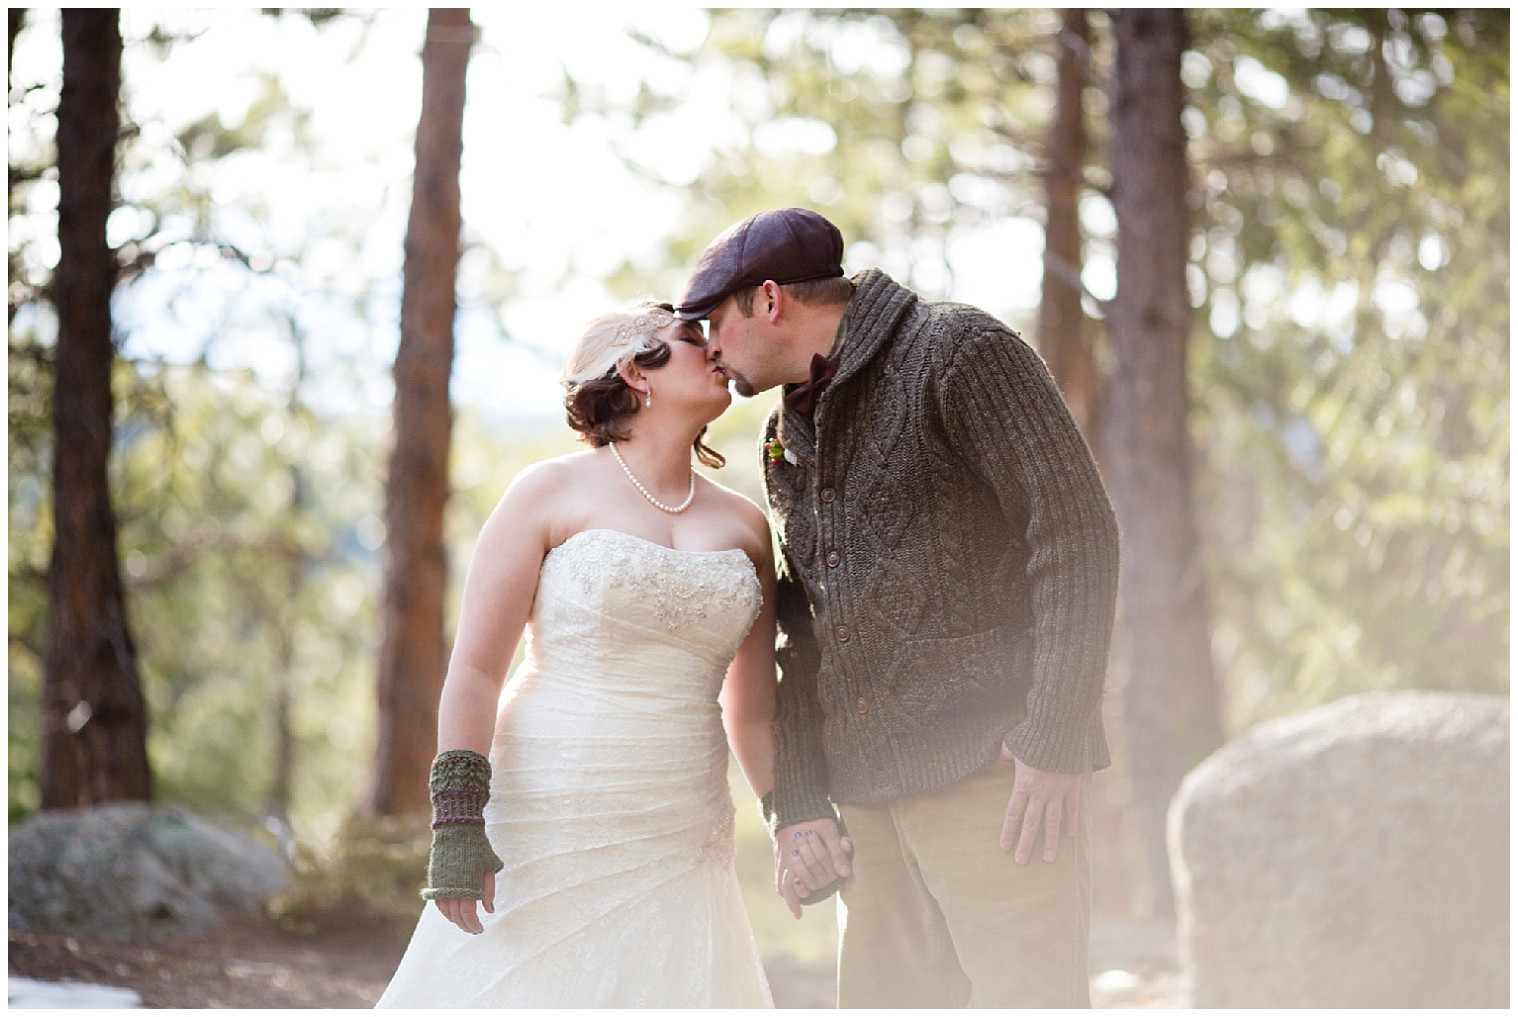 The wedding couple kiss at their Boulder Colorado mountain elopement.